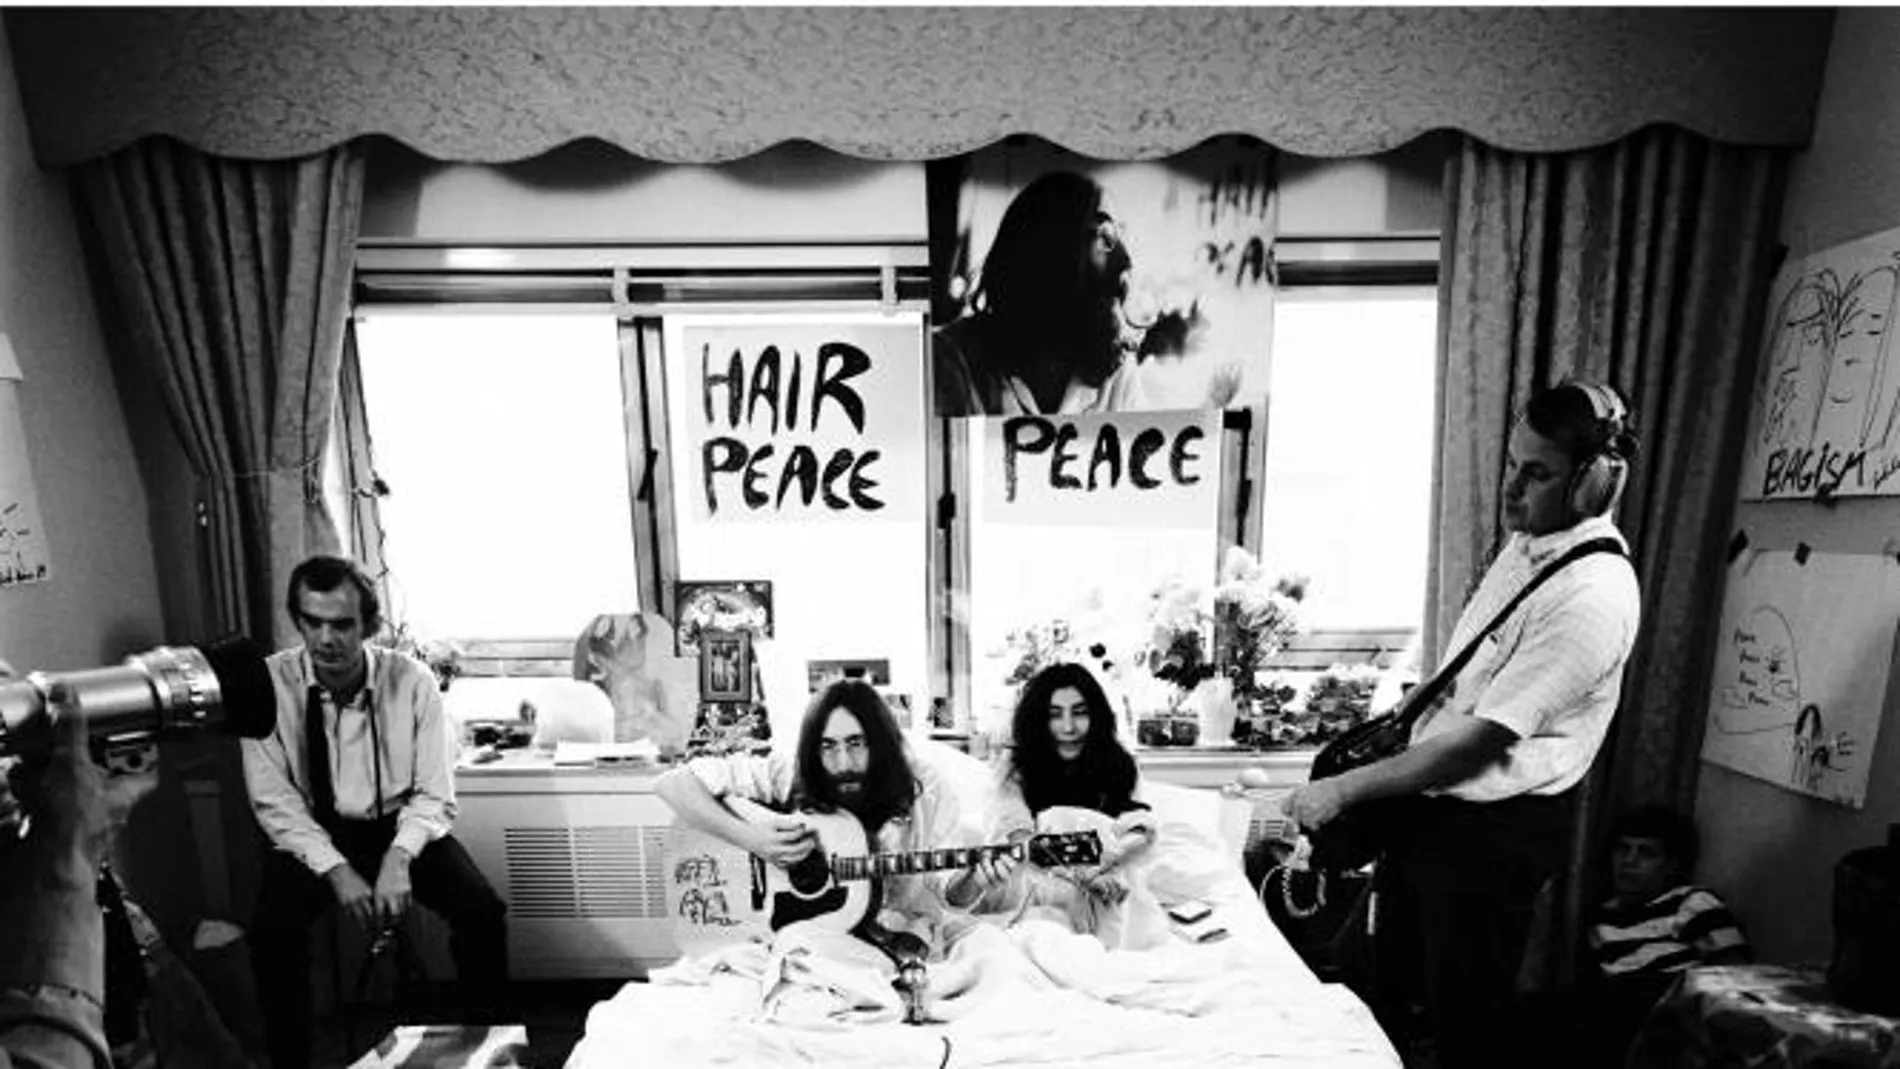 Foto titulada "En la cama" tomada por Gerry Deiter, donde se ve a Yoko Ono y John Lennon tocando la guitarra acústica en pijama en una cama en un hotel de Montreal en 1969, durante su segundo encierro de ocho días por la paz